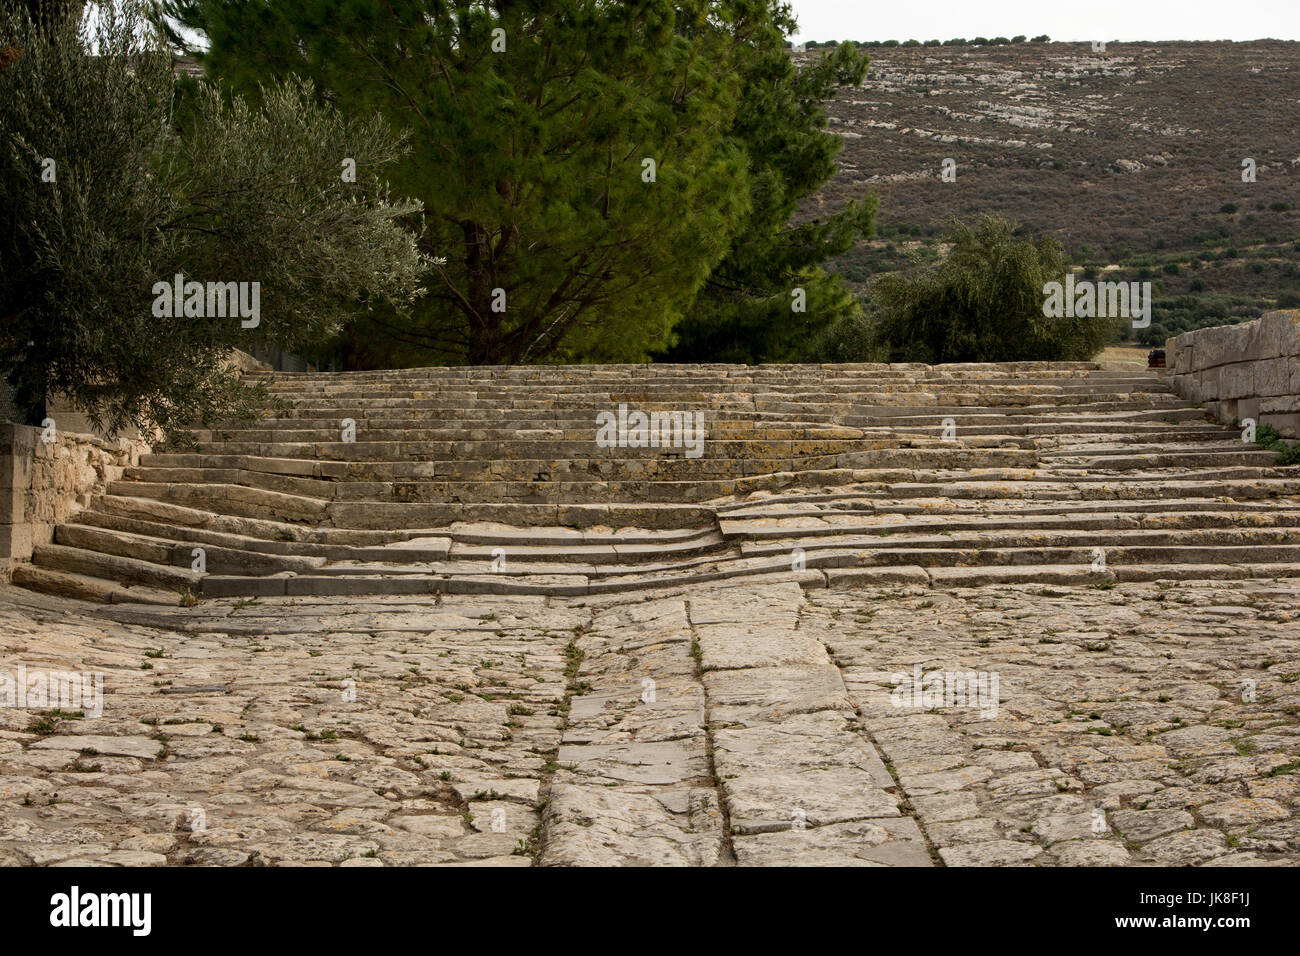 Le Palais de Knossos est le cérémonial et centre politique de la civilisation minoenne. La Route Royale qui relie le port avec le palais. Banque D'Images